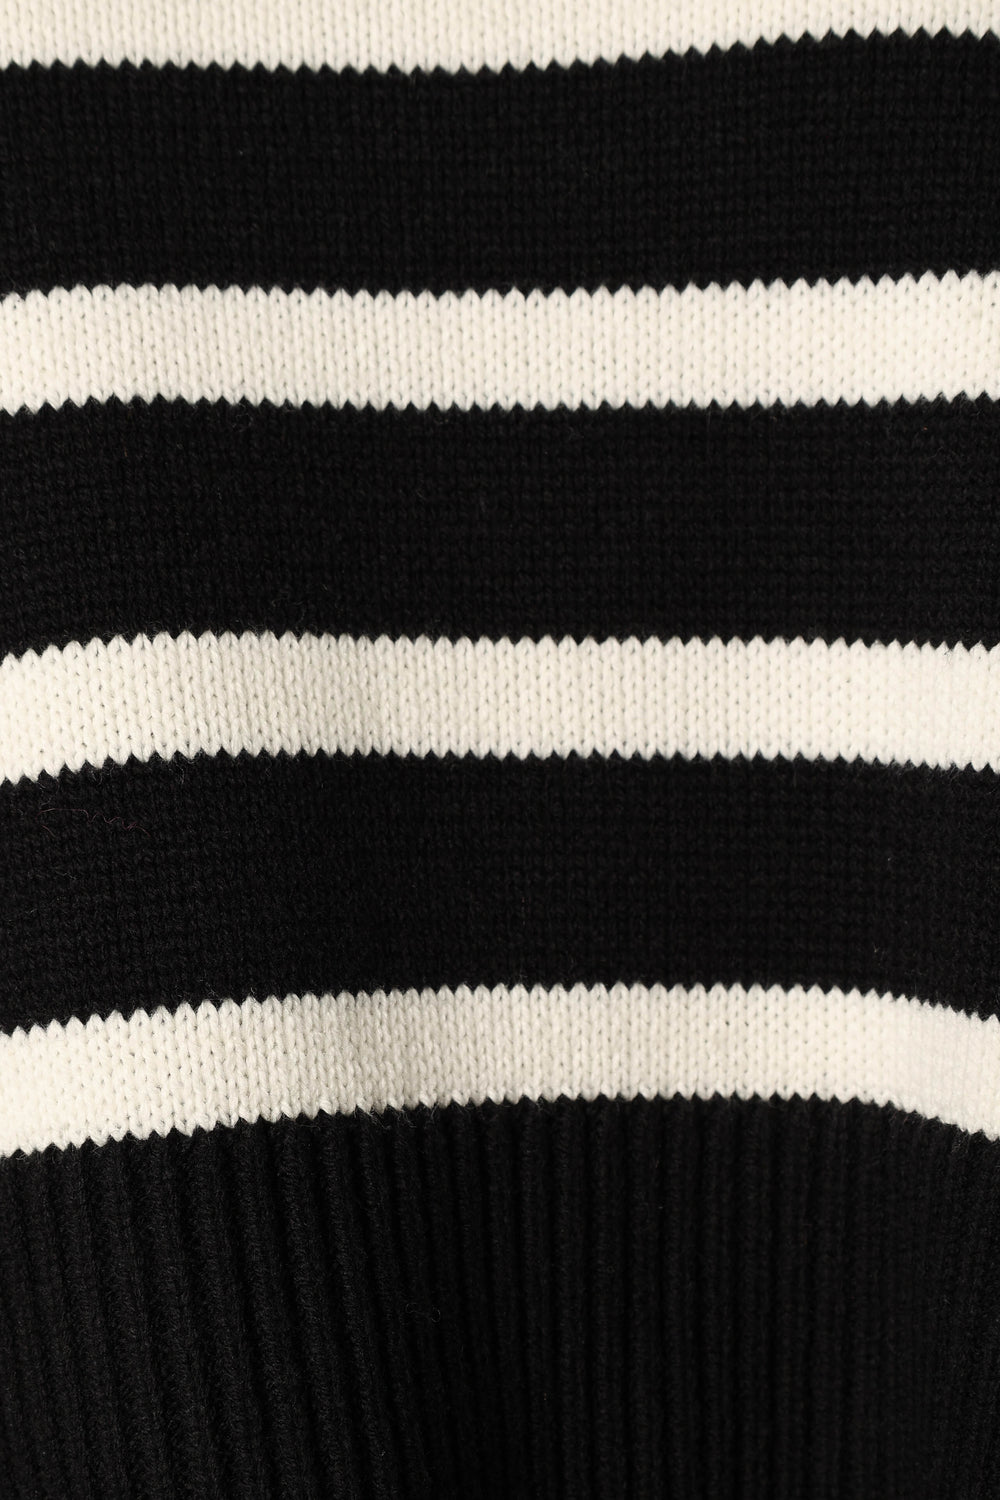 KNITWEAR @Avalynn Striped Knit Sweater - Black White